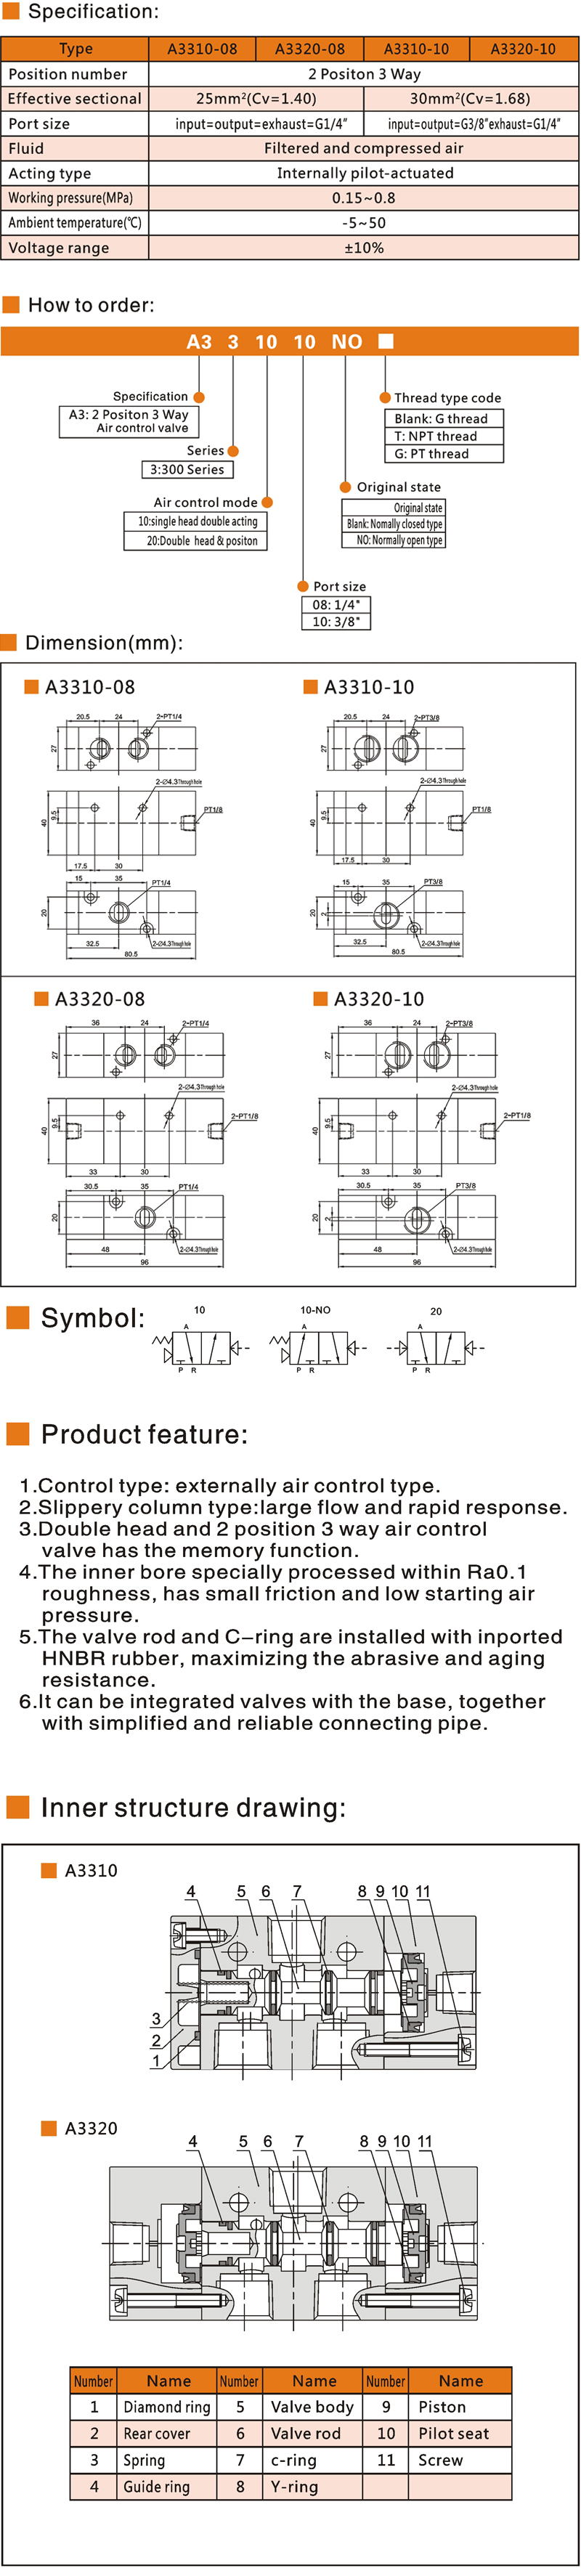 21 A3300 Air control valve.jpg